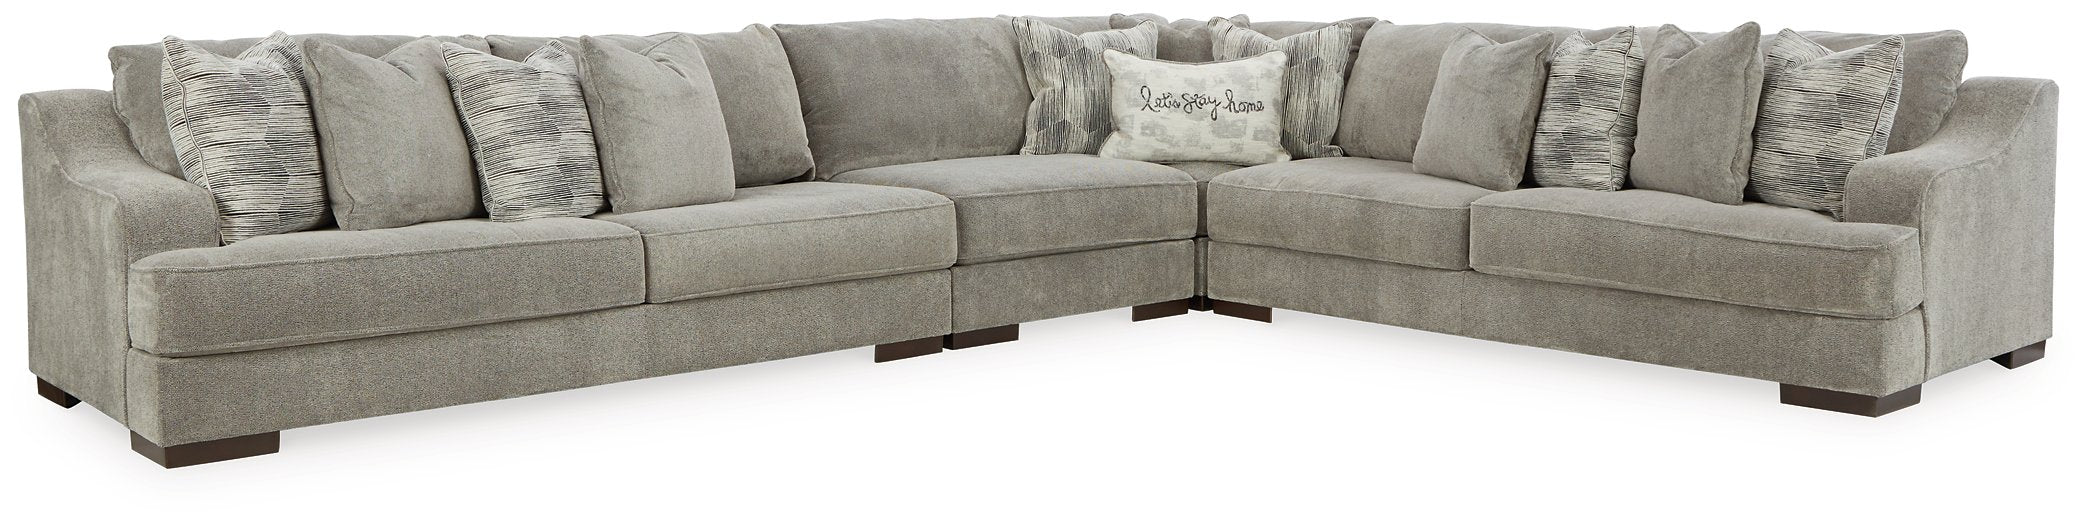 Bayless Living Room Set - Evans Furniture (CO)